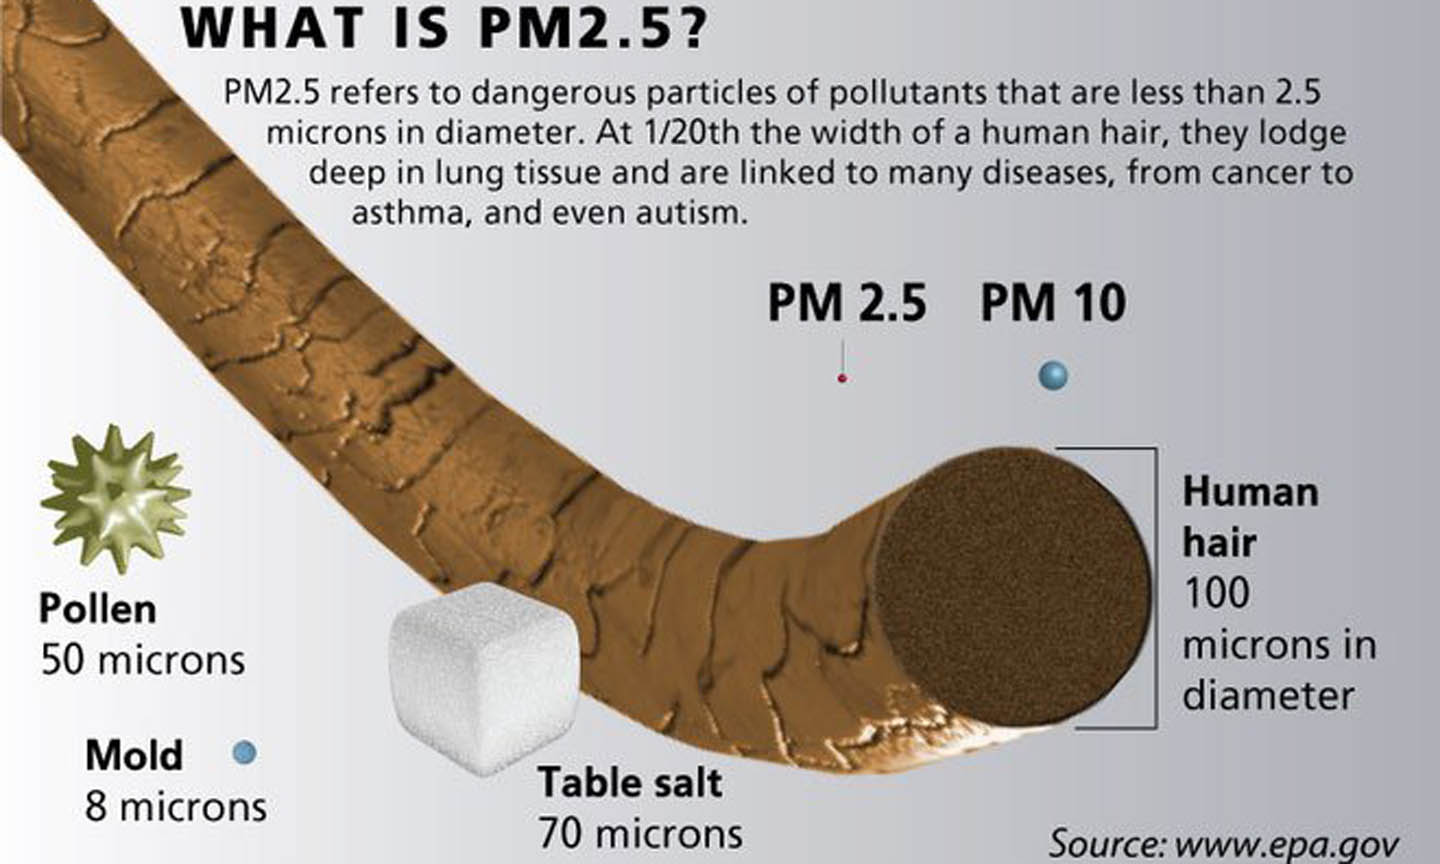 Ảnh phóng to cho thấy kích thuớc của bụi PM10 và PM2,5 nhỏ hơn bề mặt sợi tóc hàng chục lần. Đây là lí do khiến loại bụi này trở nên nguy hiểm, vì có thể lọt qua các loại vải thông thường, đi thẳng vào phổi.